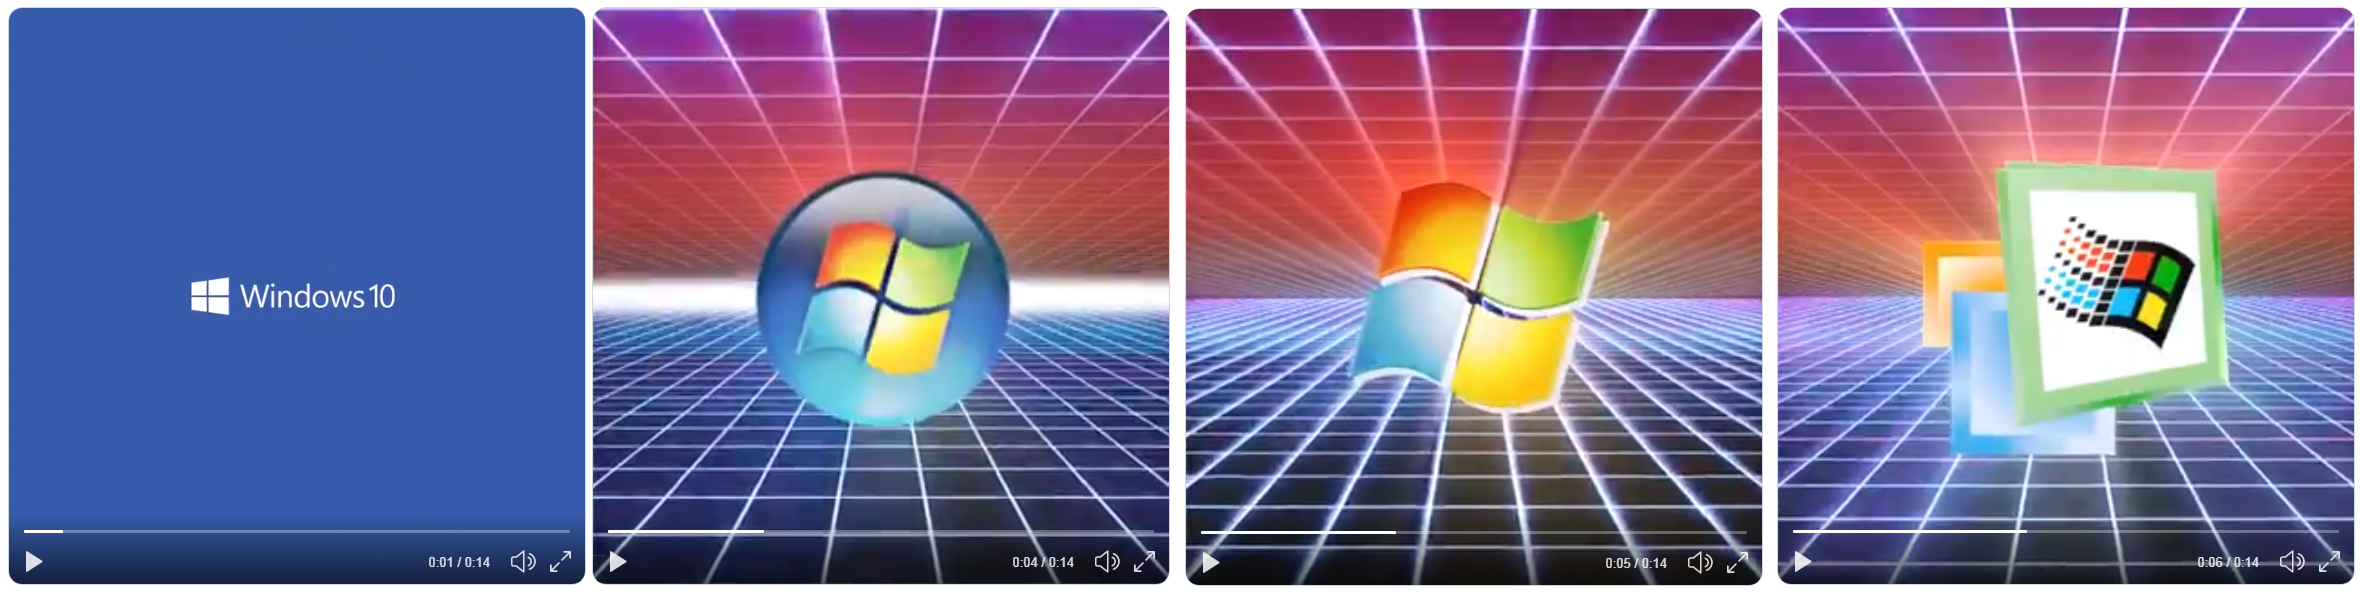 微软突然宣传 Windows 1.0